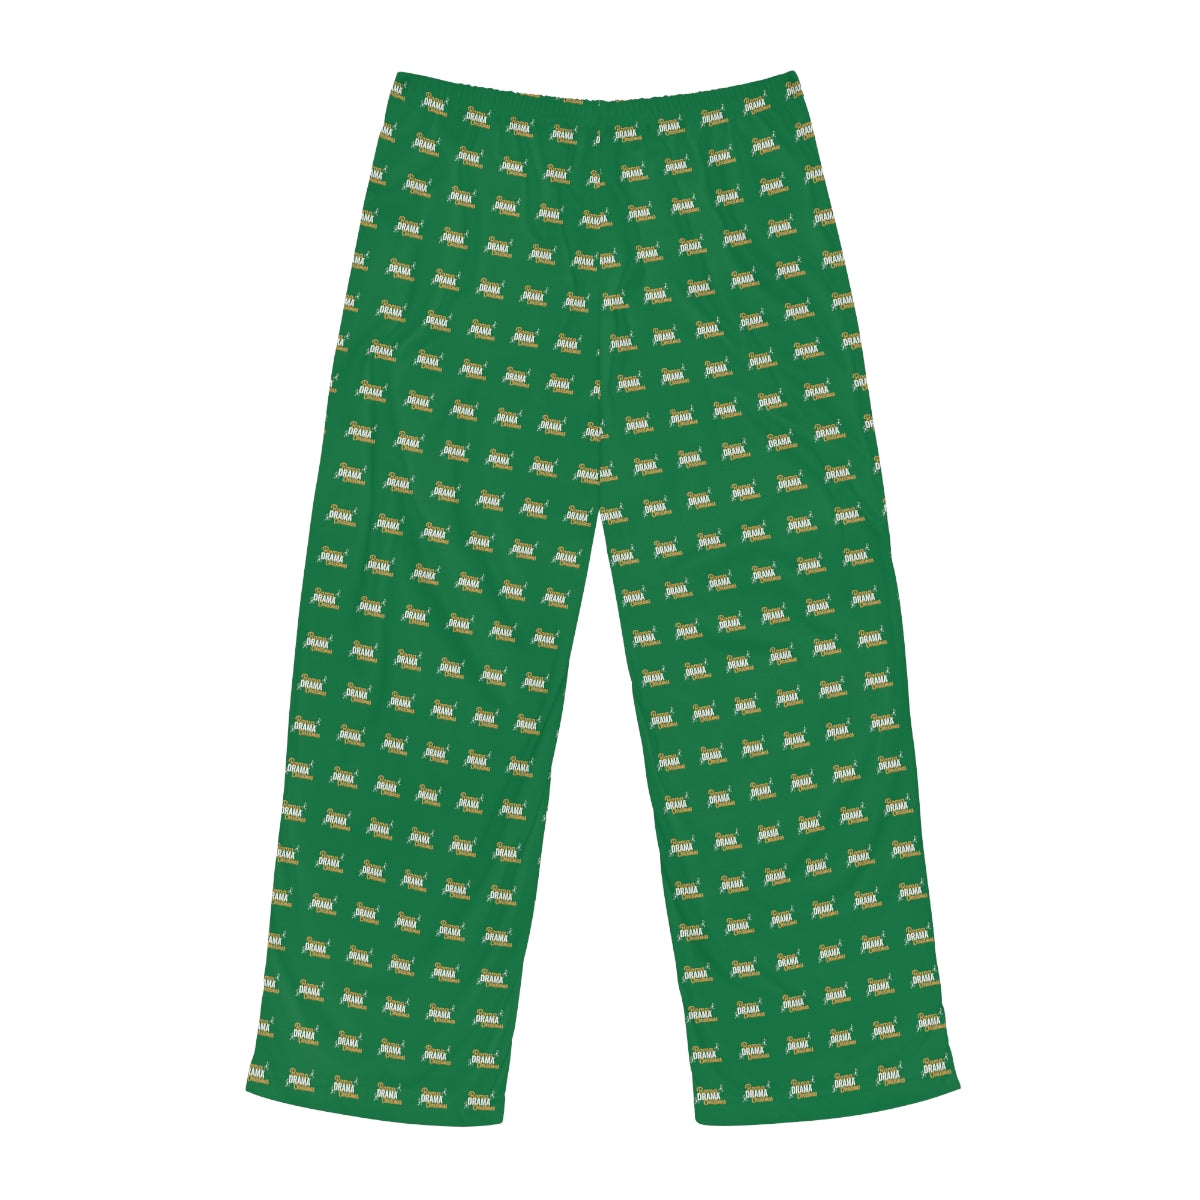 Men's Pajama Pants - Green